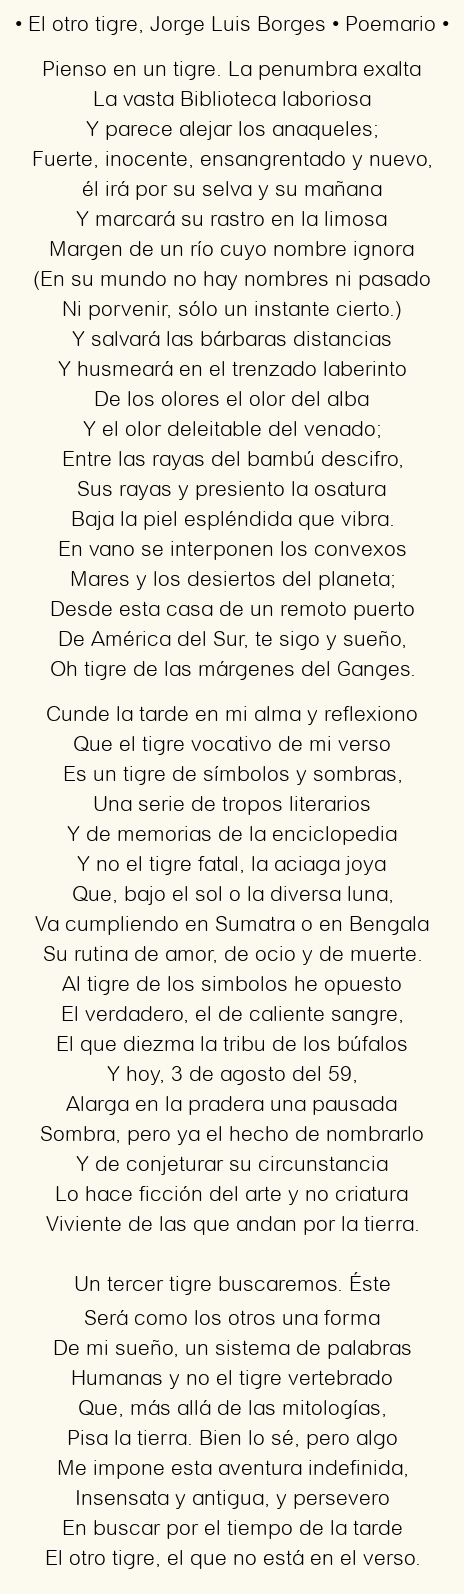 Imagen con el poema El otro tigre, por Jorge Luis Borges